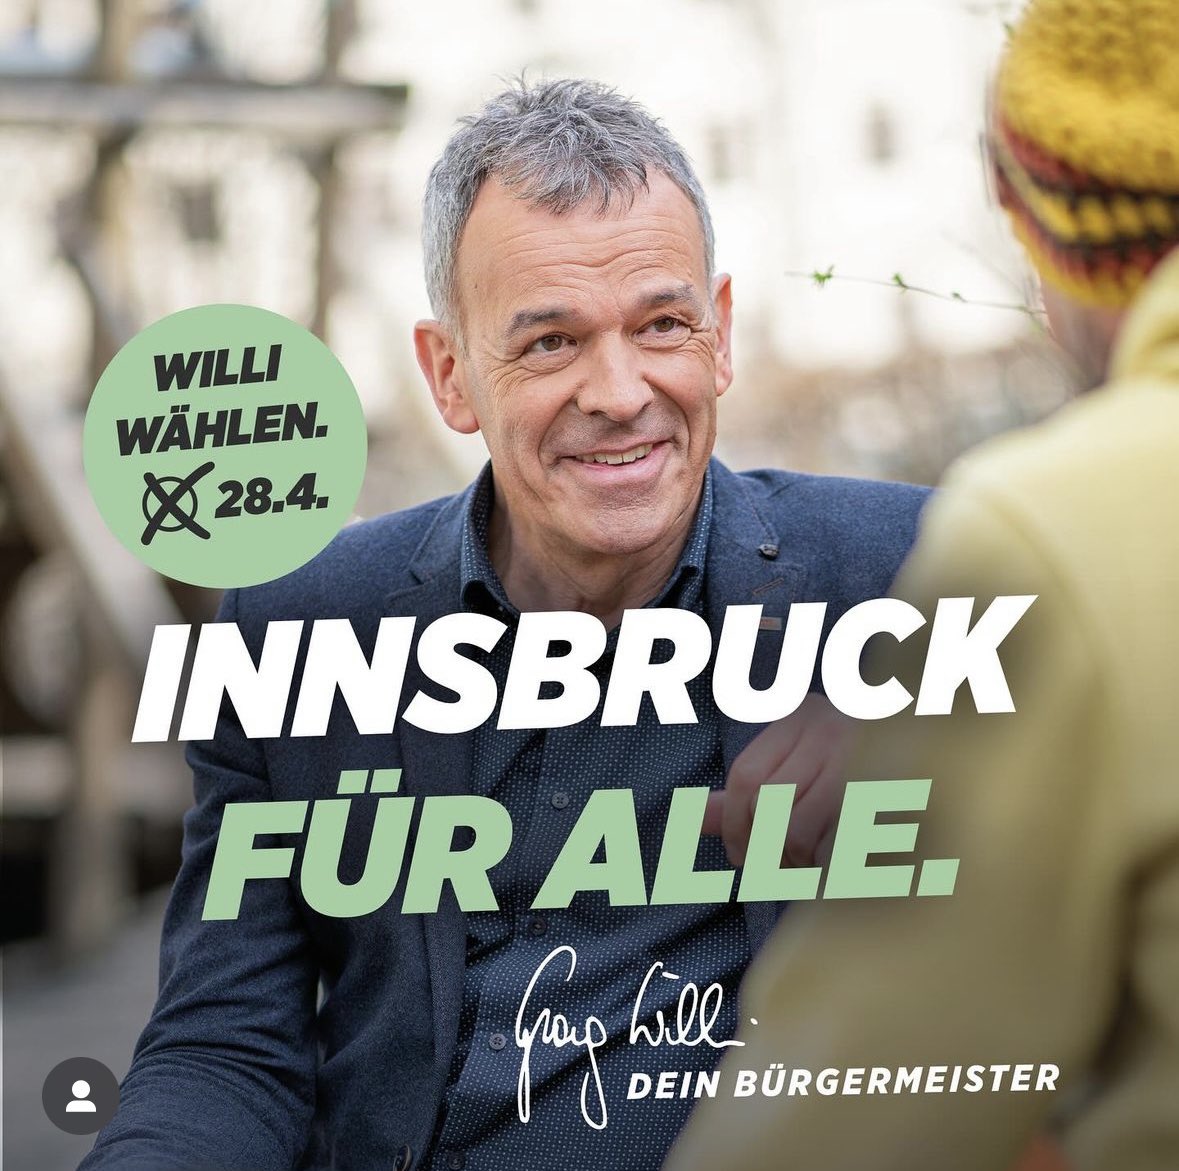 Bürgermeister @DenGeorgWilli hat heute 6 Fraktionen im Innsbrucker Gemeinderat zu Gesprächen über die zukünftige konstruktive Zusammenarbeit eingeladen. Erstes Thema: leistbares Wohnen. Und gleichzeitig ist seine Stichwahlkampagne online gegangen, mit einer klaren Botschaft: